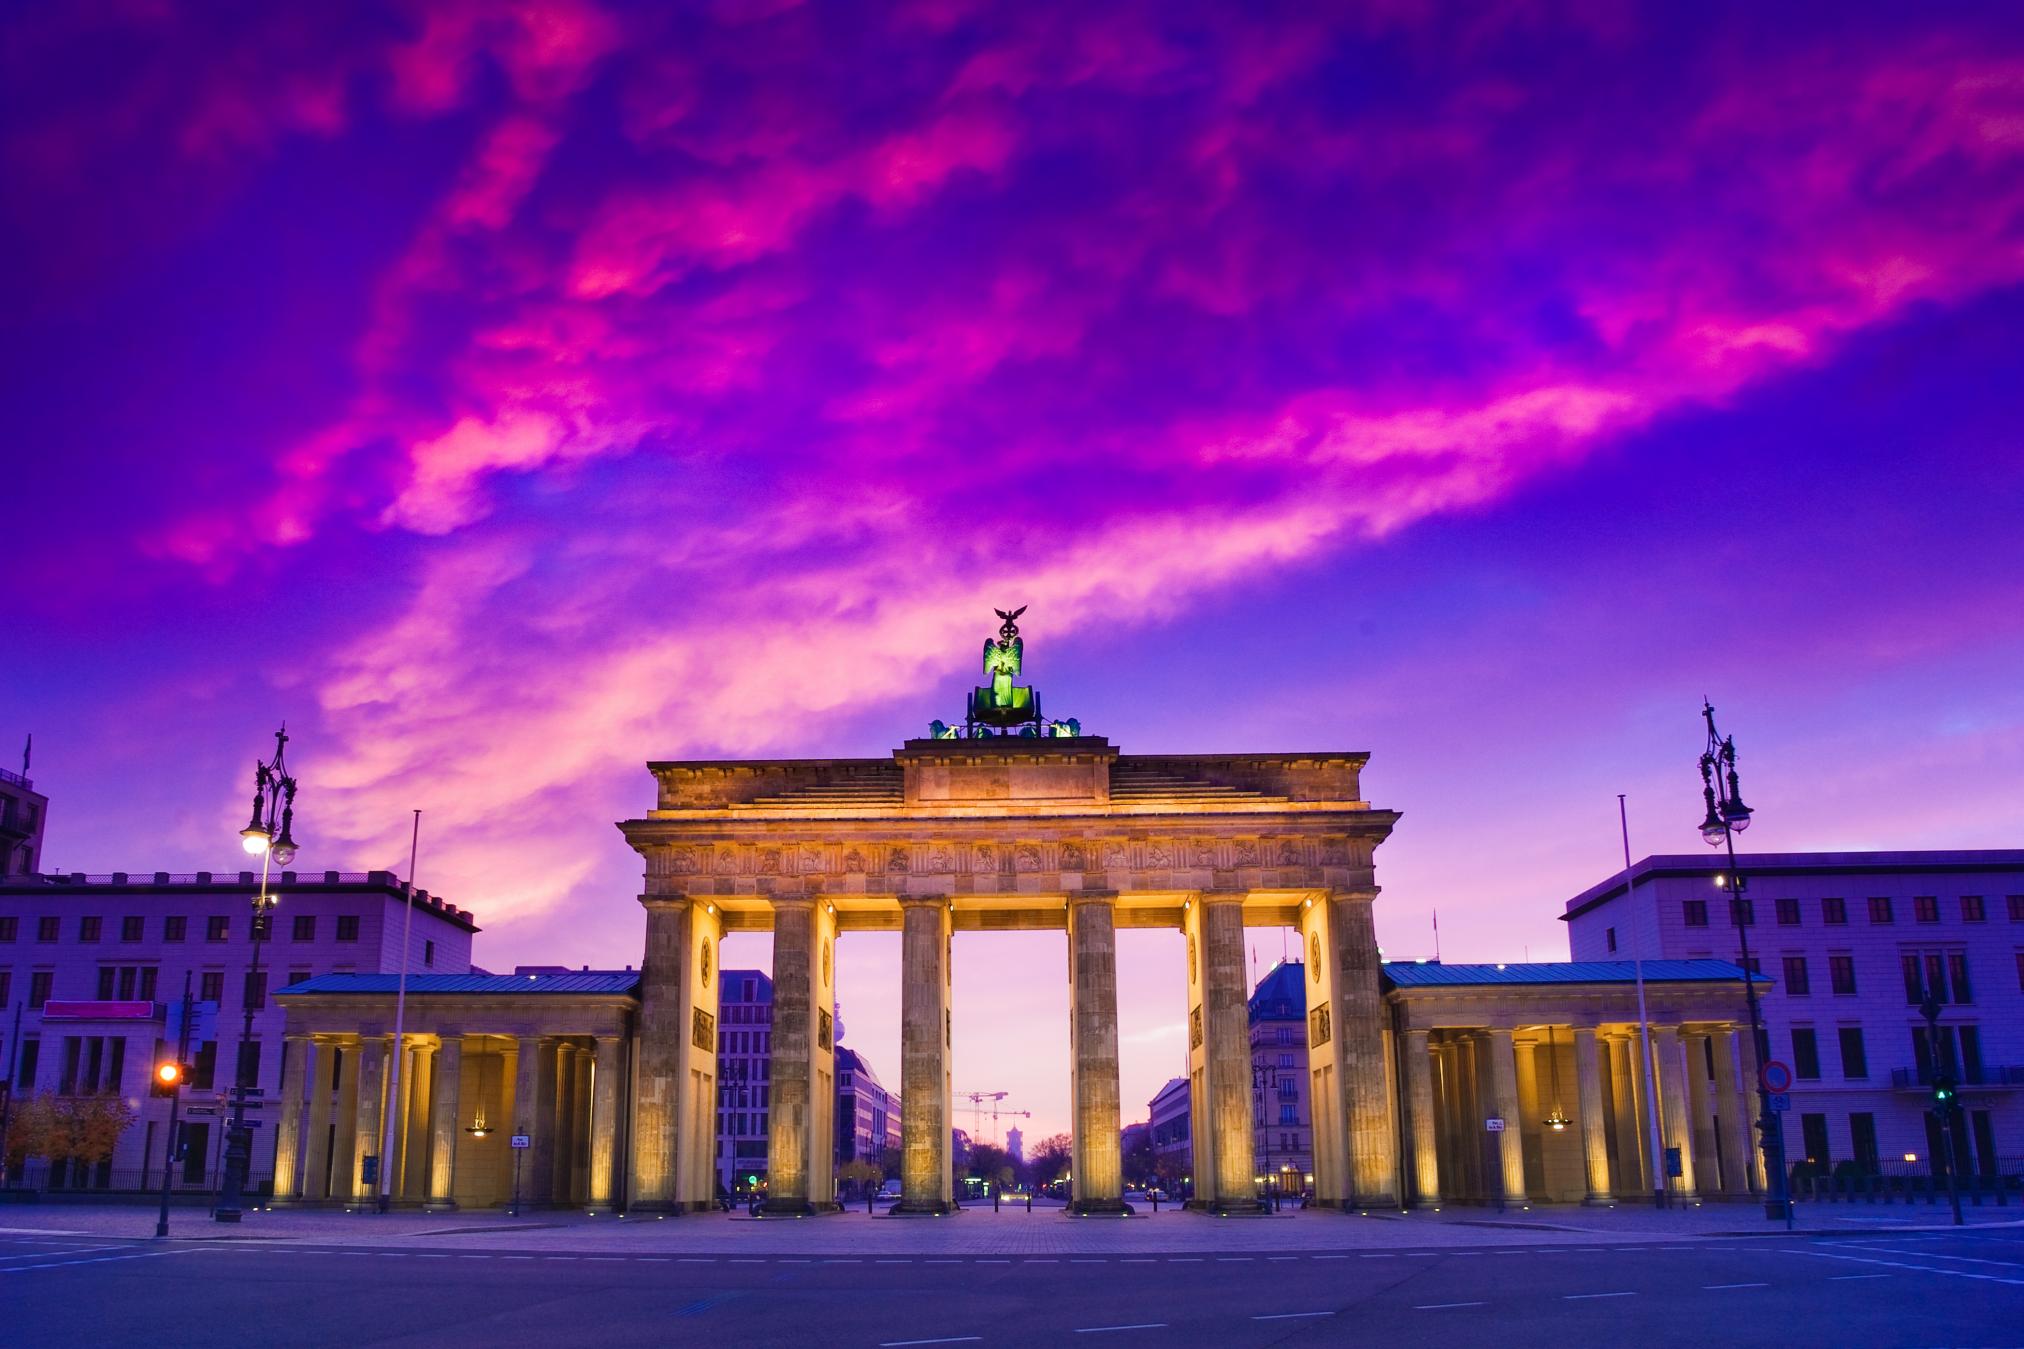 Cổng Brandenburg là địa điểm nổi tiếng tại Berlin, Đức